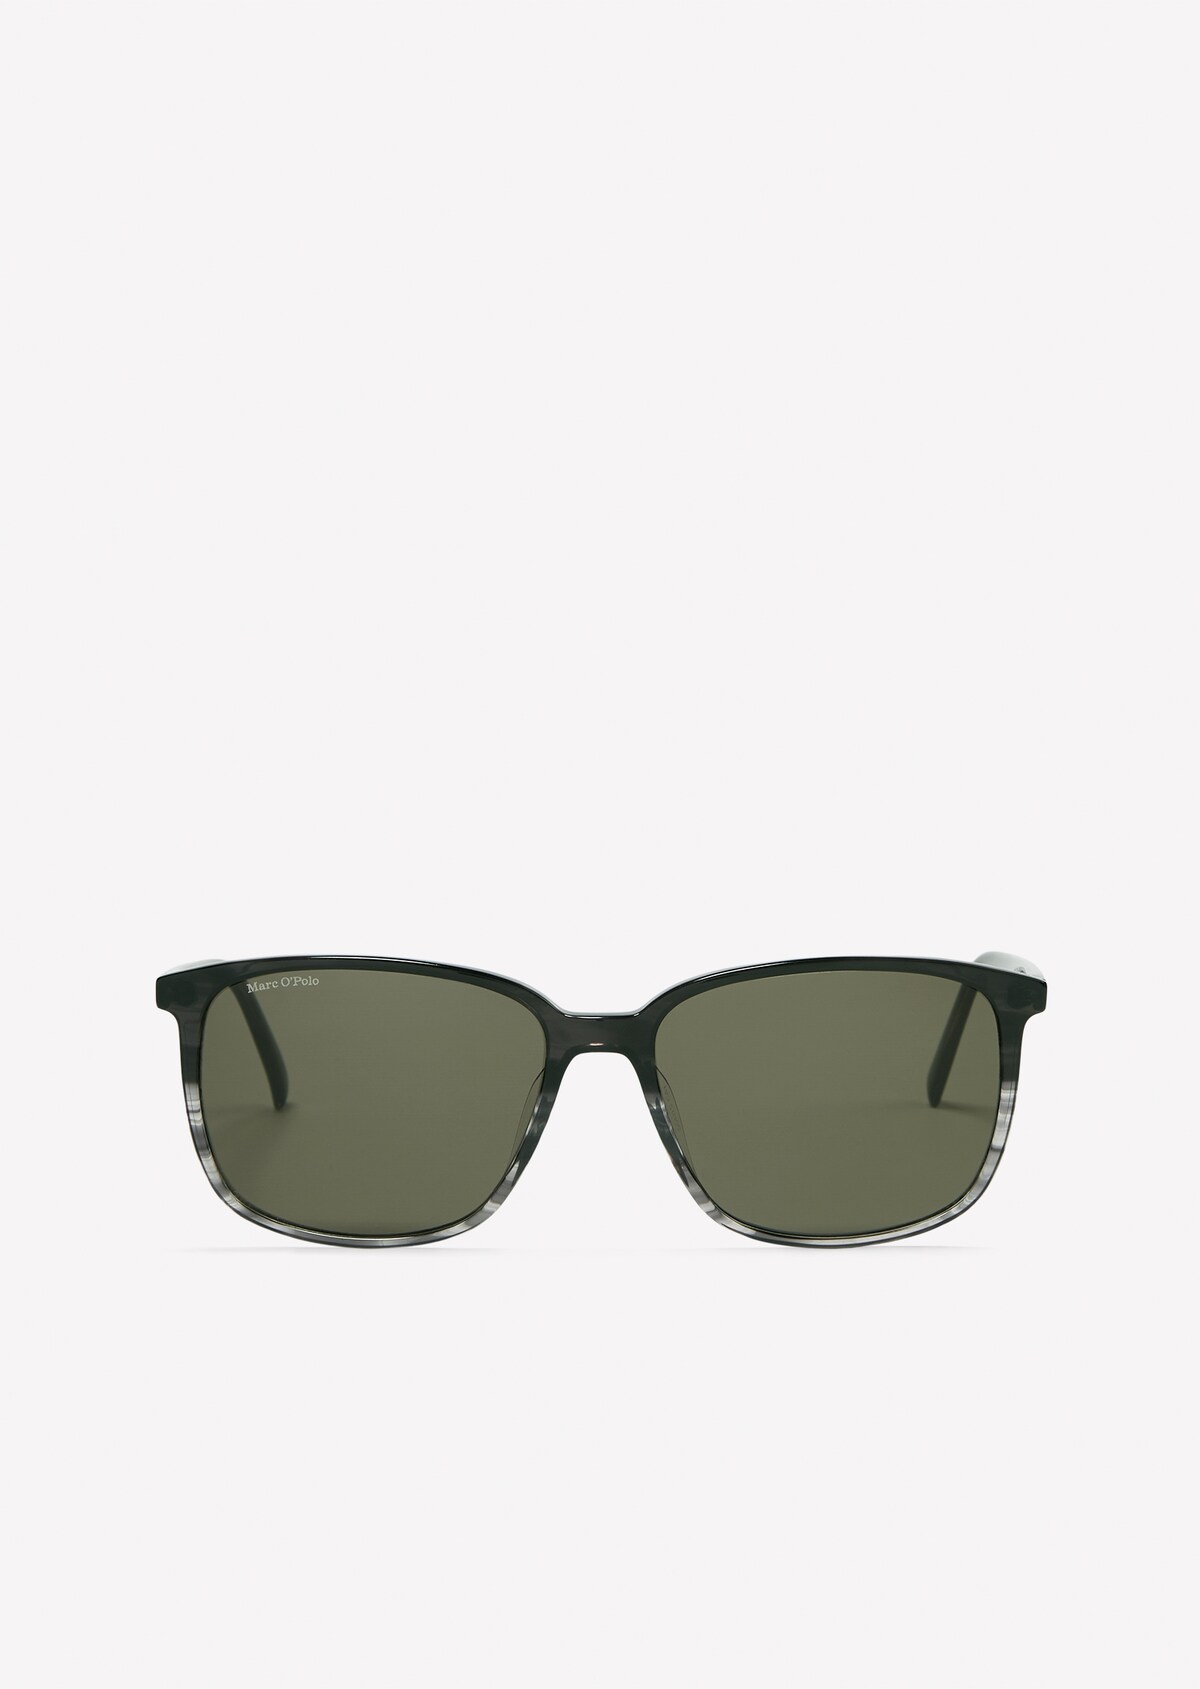 Herren-Sonnenbrille im Klassik-Look - schwarz